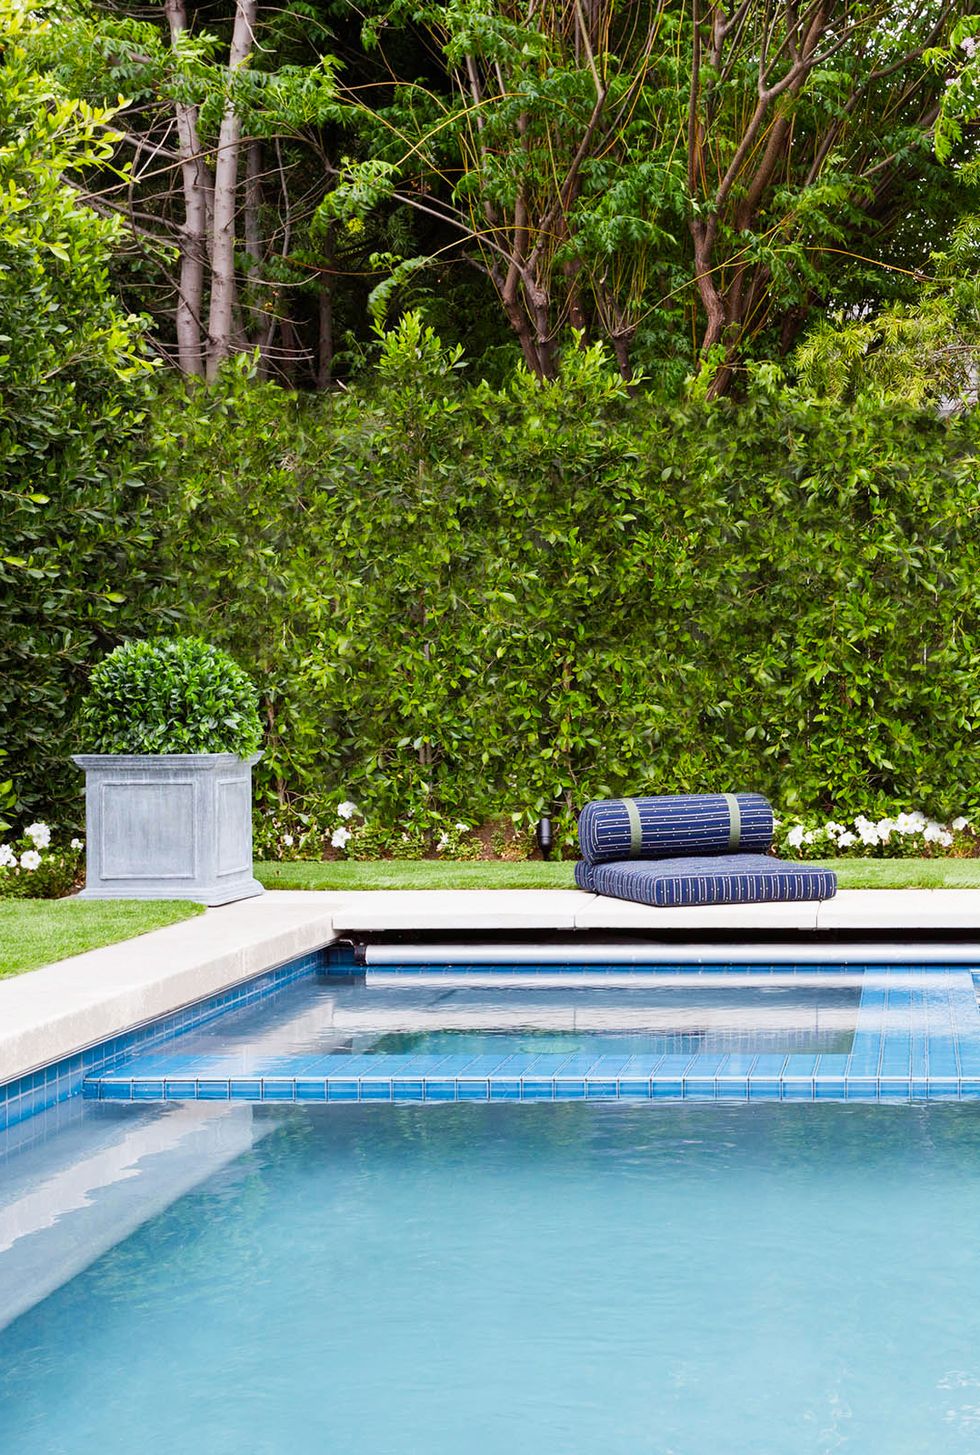 hình ảnh cận cảnh một góc bể bơi trong xanh ở sân sau nhà, phía trên đặt đệm nằm tắm nắng, xung quanh cây cối xanh mướt